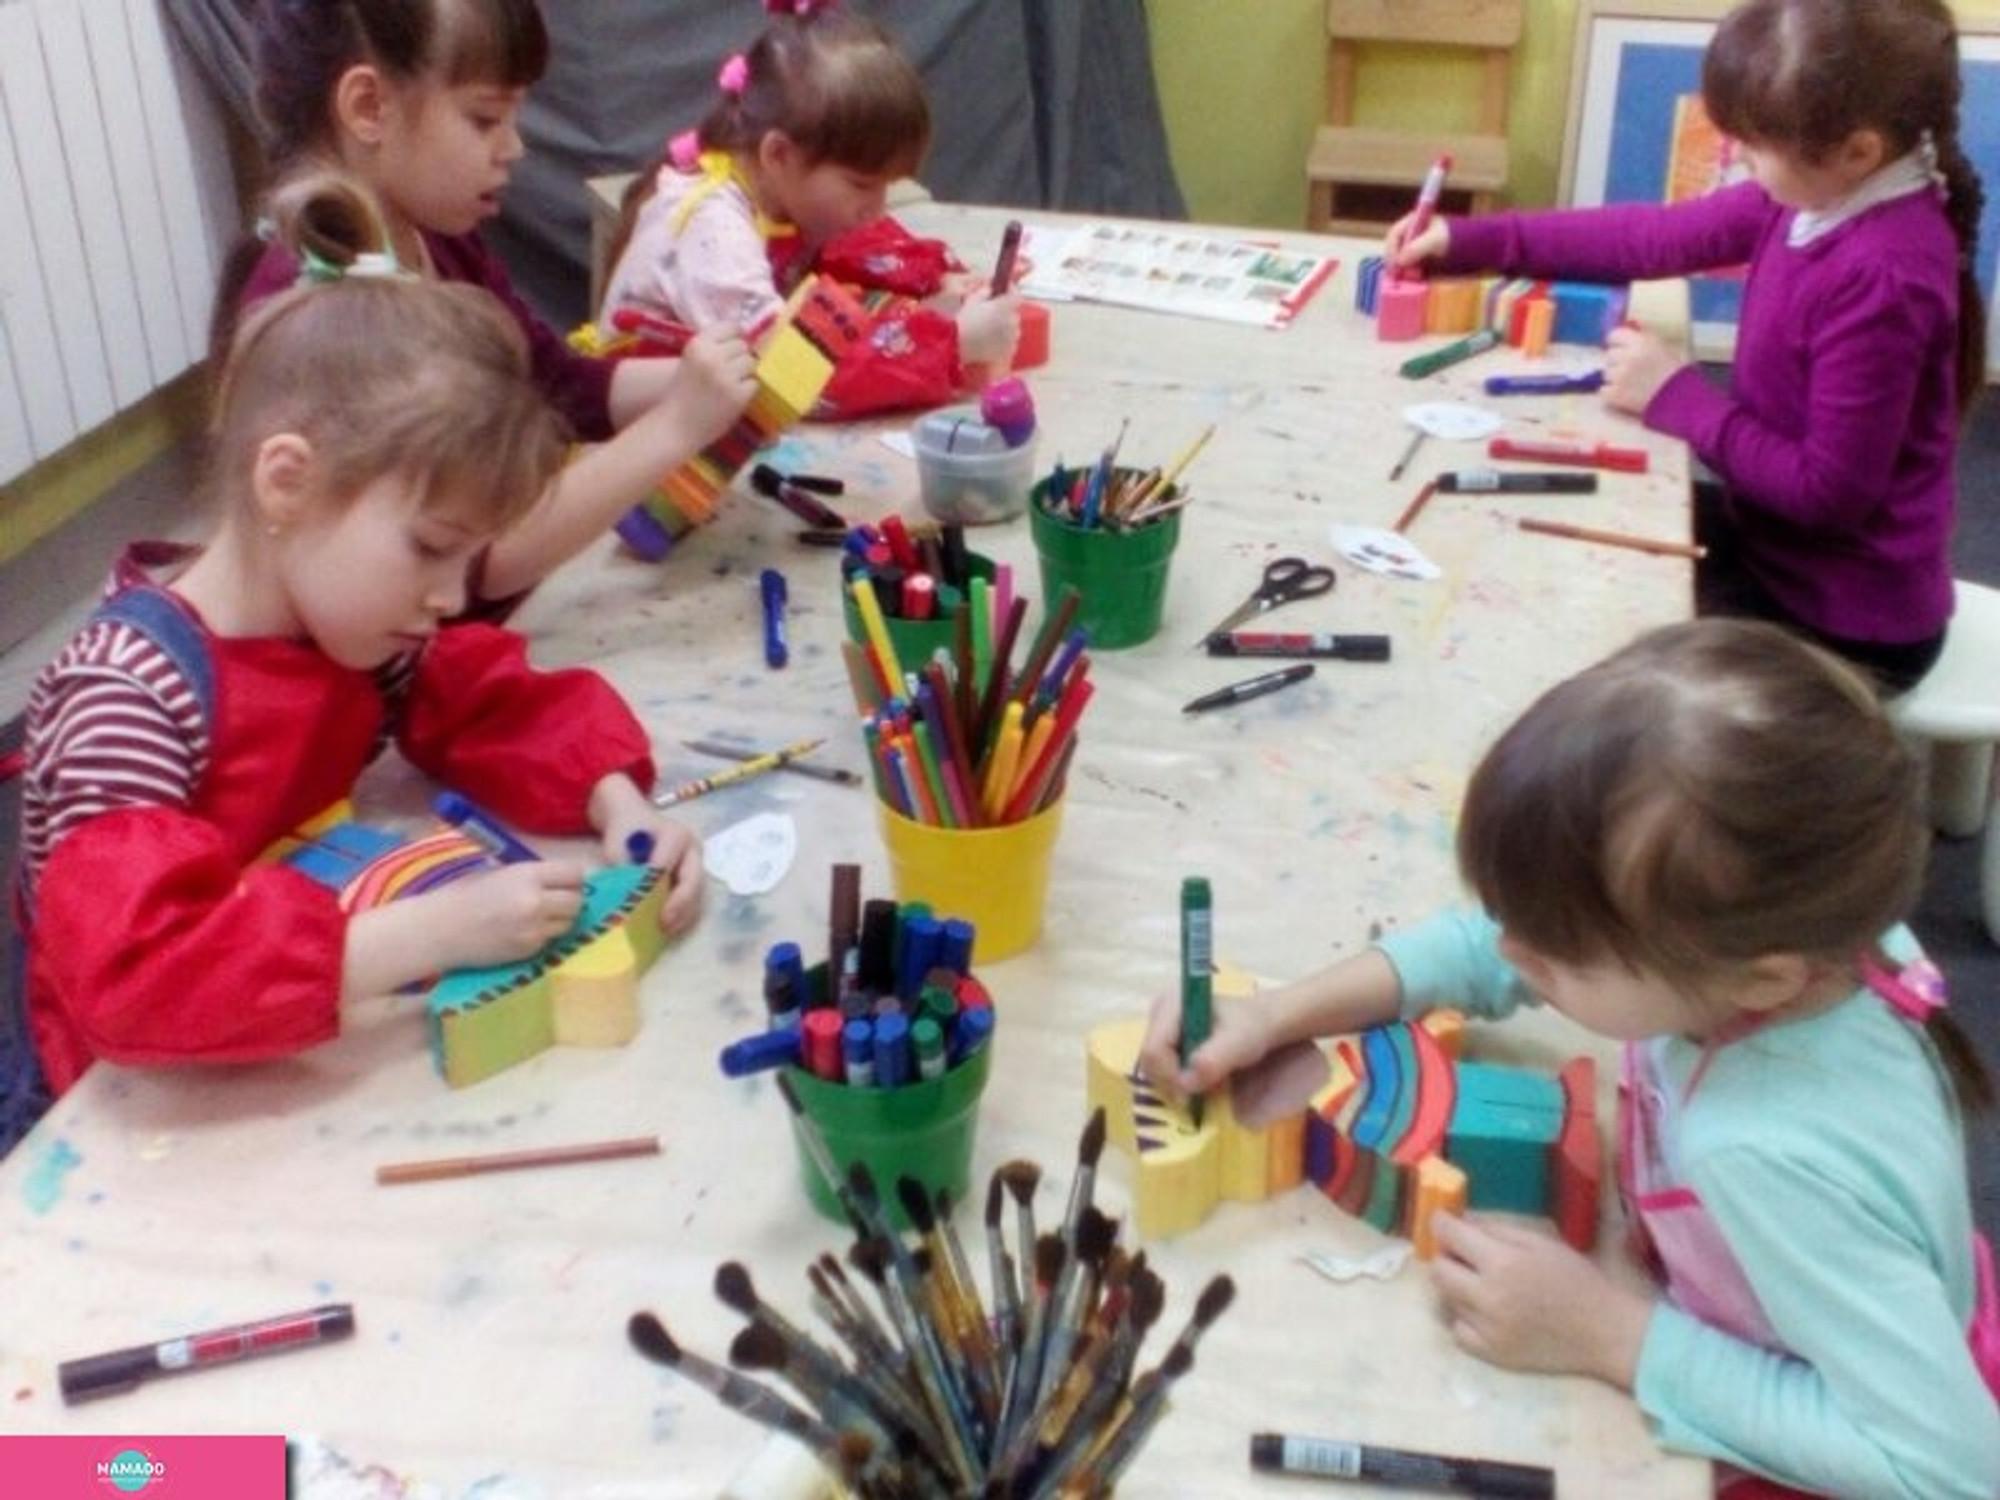 "Радужный рисунок", студия современного искусства, творческие занятия для детей от 2,5 лет в Октябрьском районе Омска 